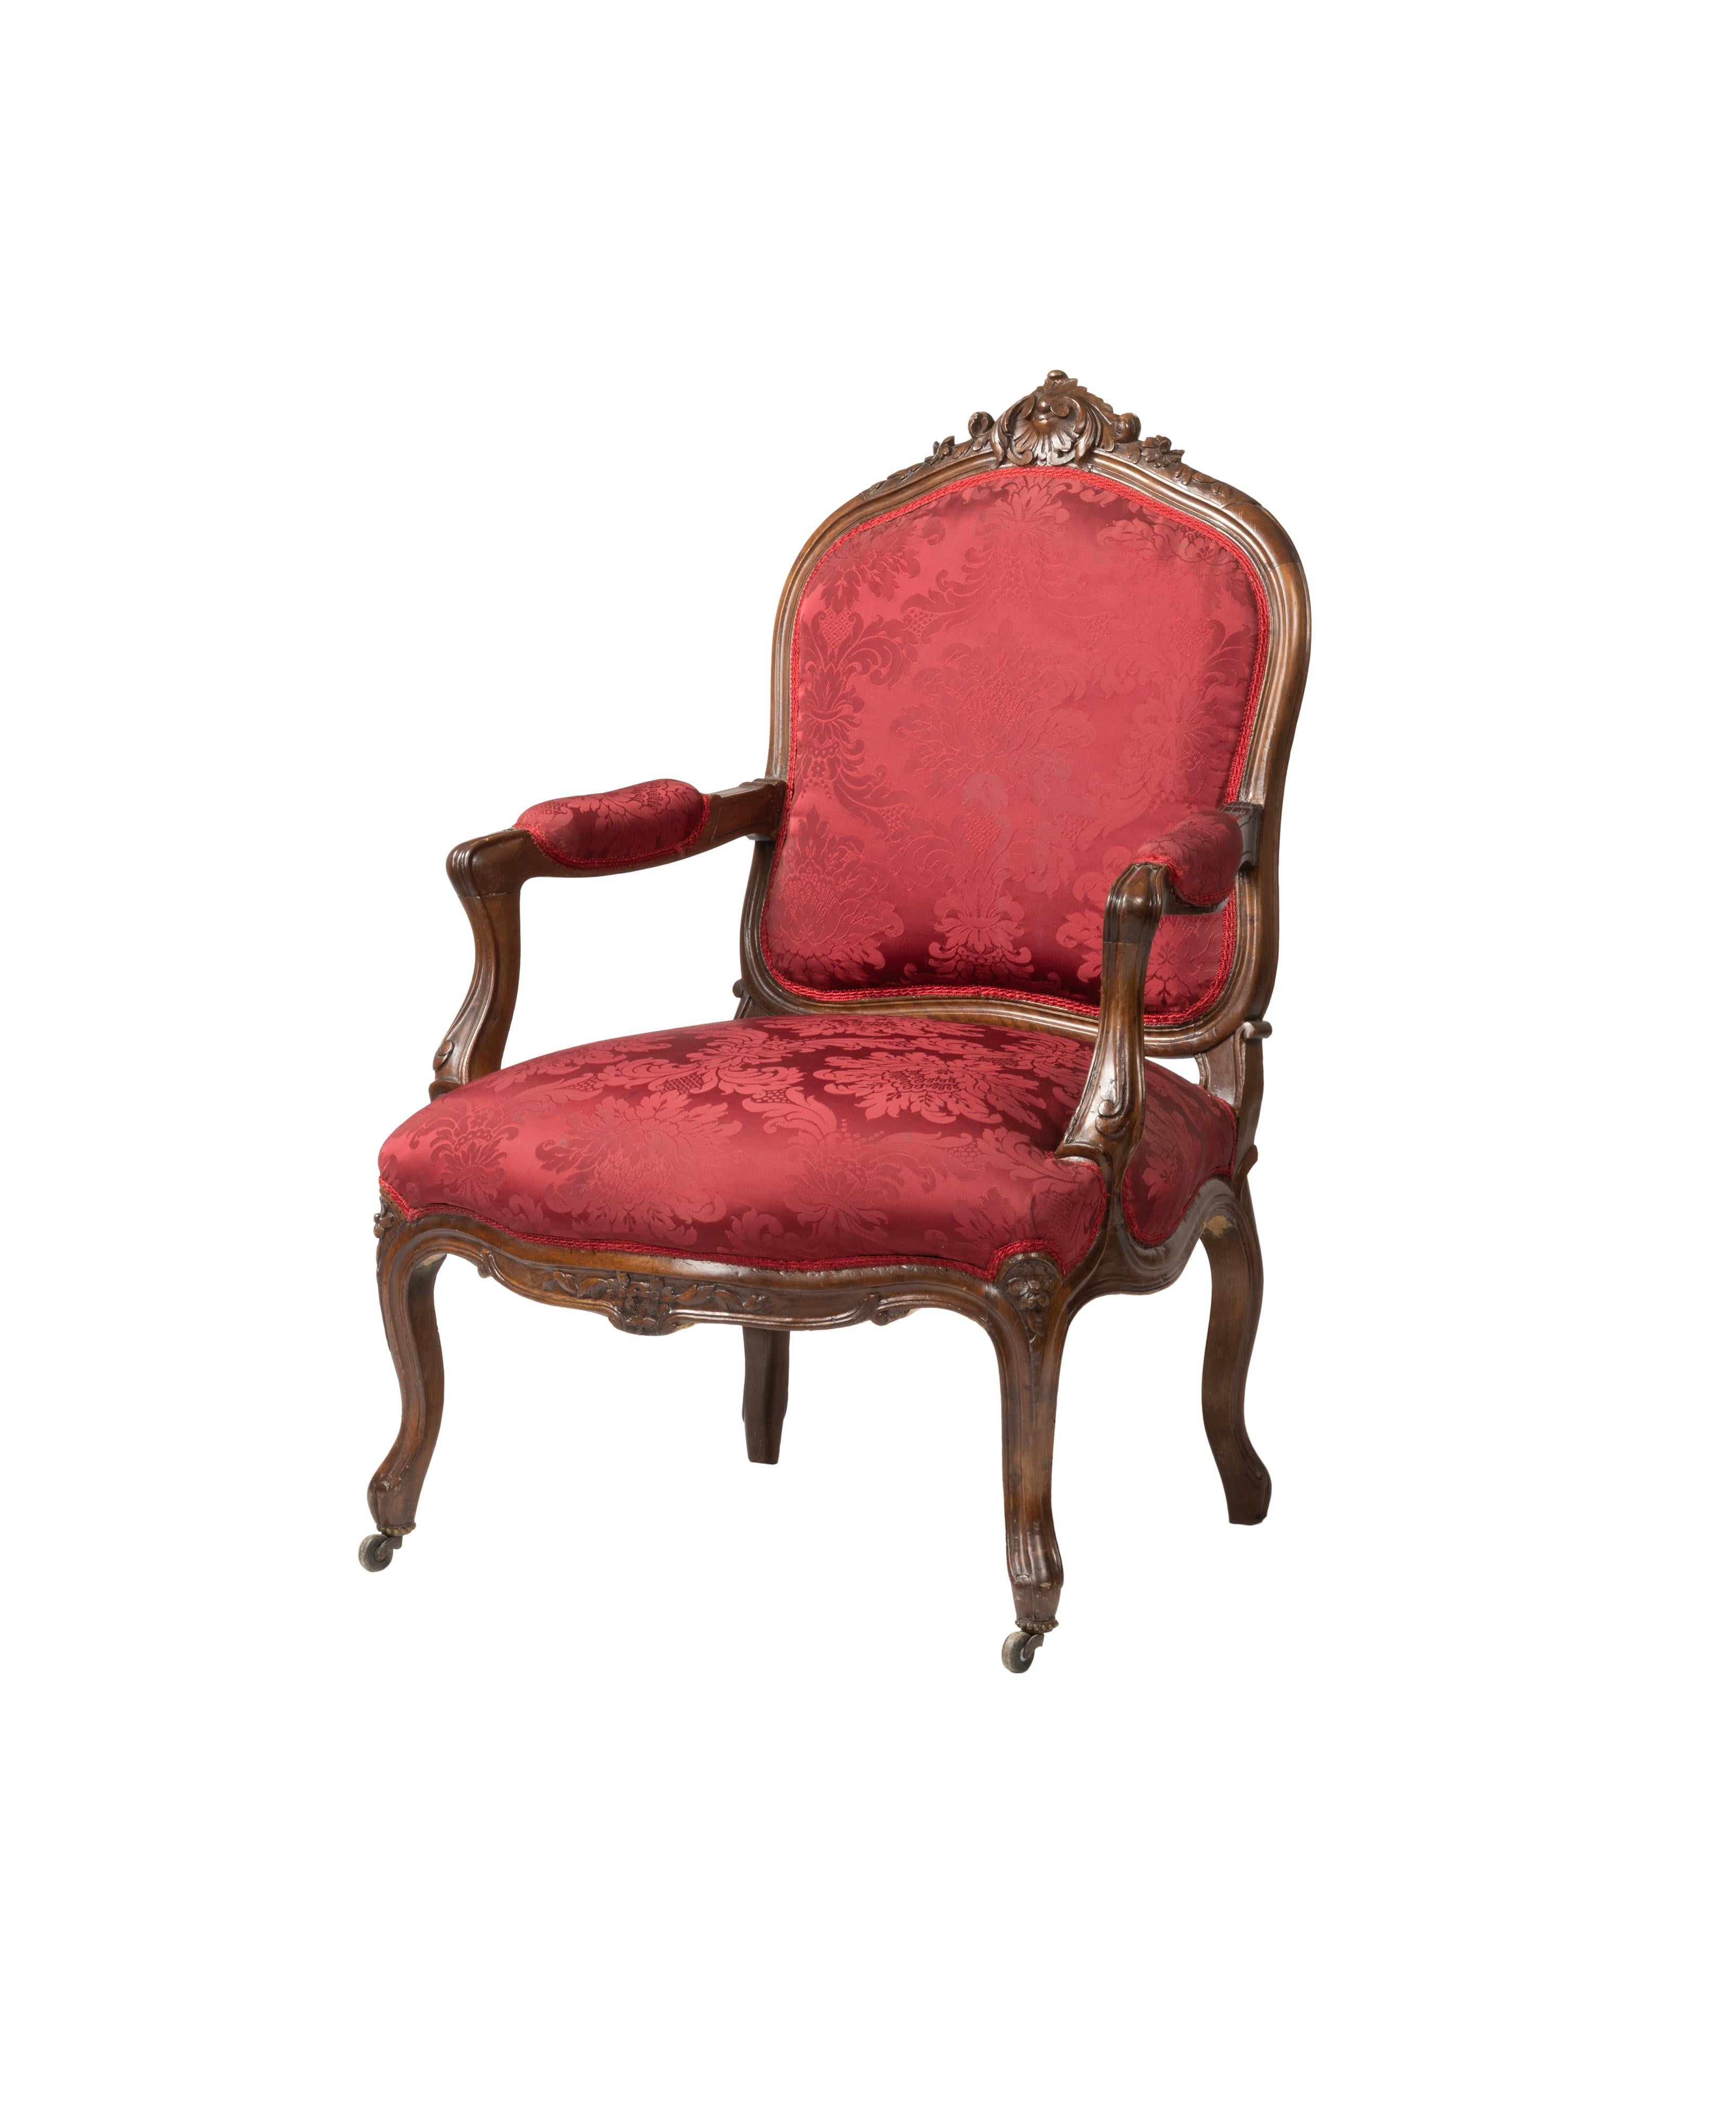 Fauteuil à la Reine à dossier dans le style de Jean Baptiste Cresson avec les manchettes des accoudoirs et de l'assise tapissées et recouvertes de damas de soie rouge, dossier violonné, accoudoirs horizontaux aux extrémités en volute s'ouvrant